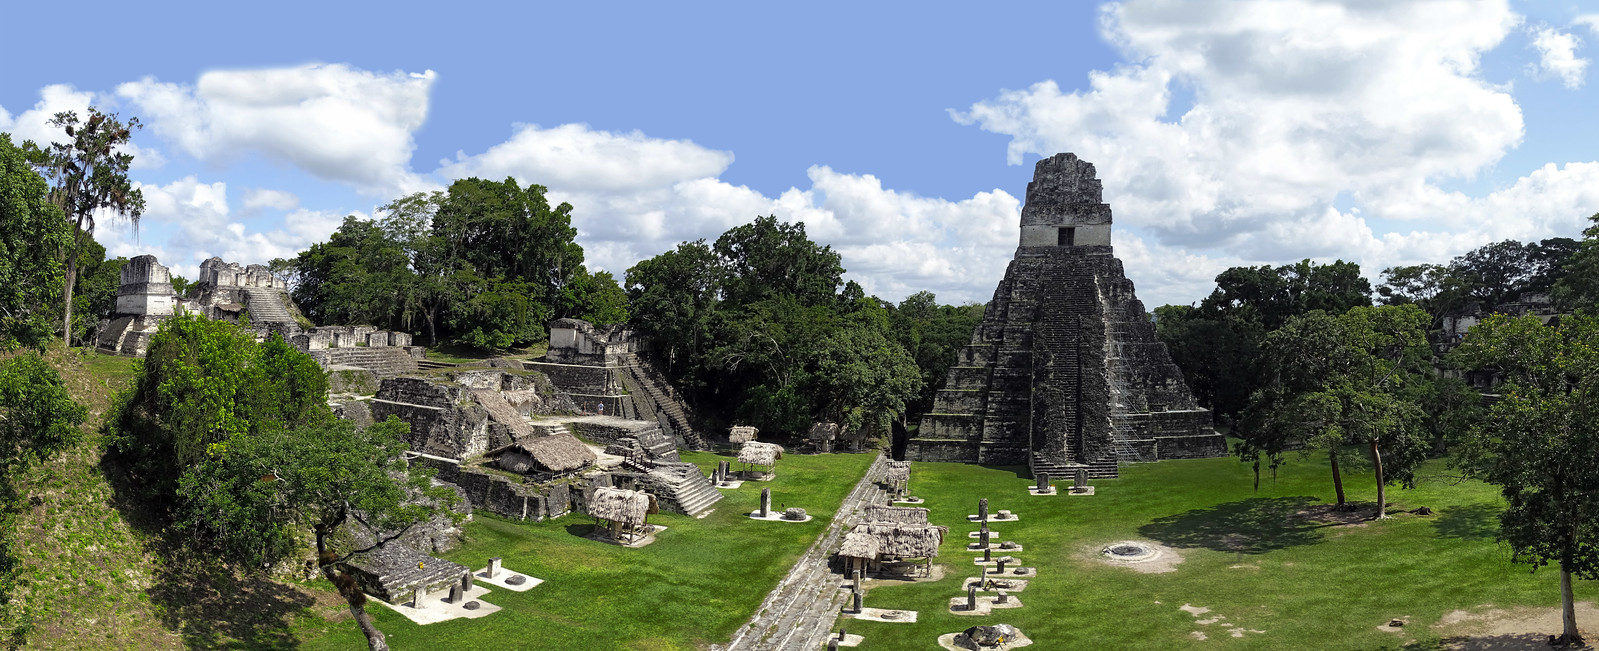 Tikal Gran Plaza ciudad Maya Sitio Arqueologico Guatemala 01